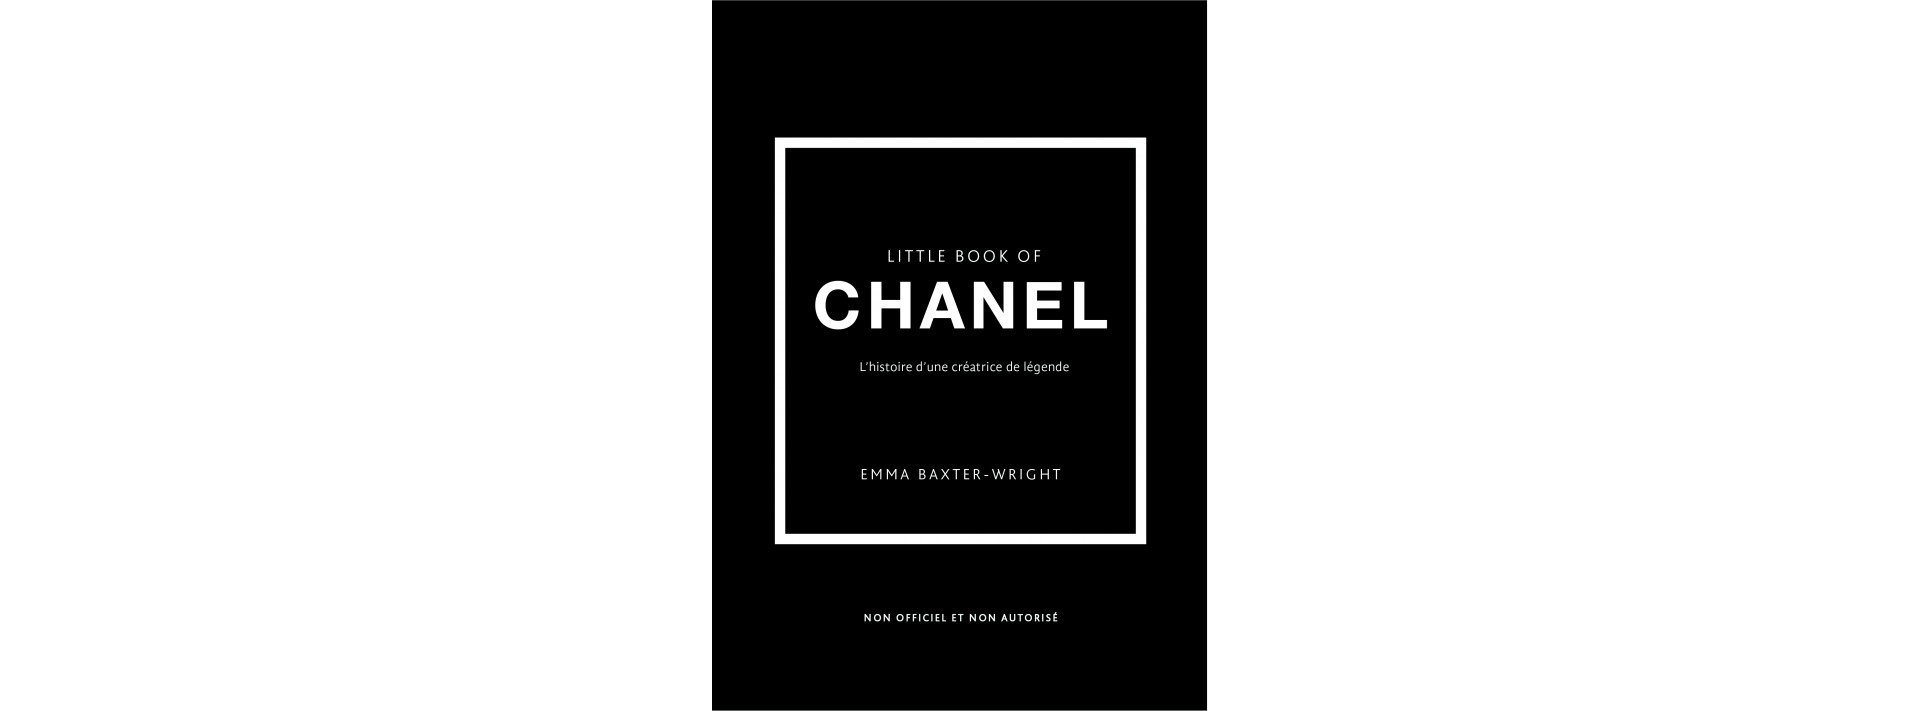 Little Book of Chanel - (version française) - L'histoire d'une créatrice de légende